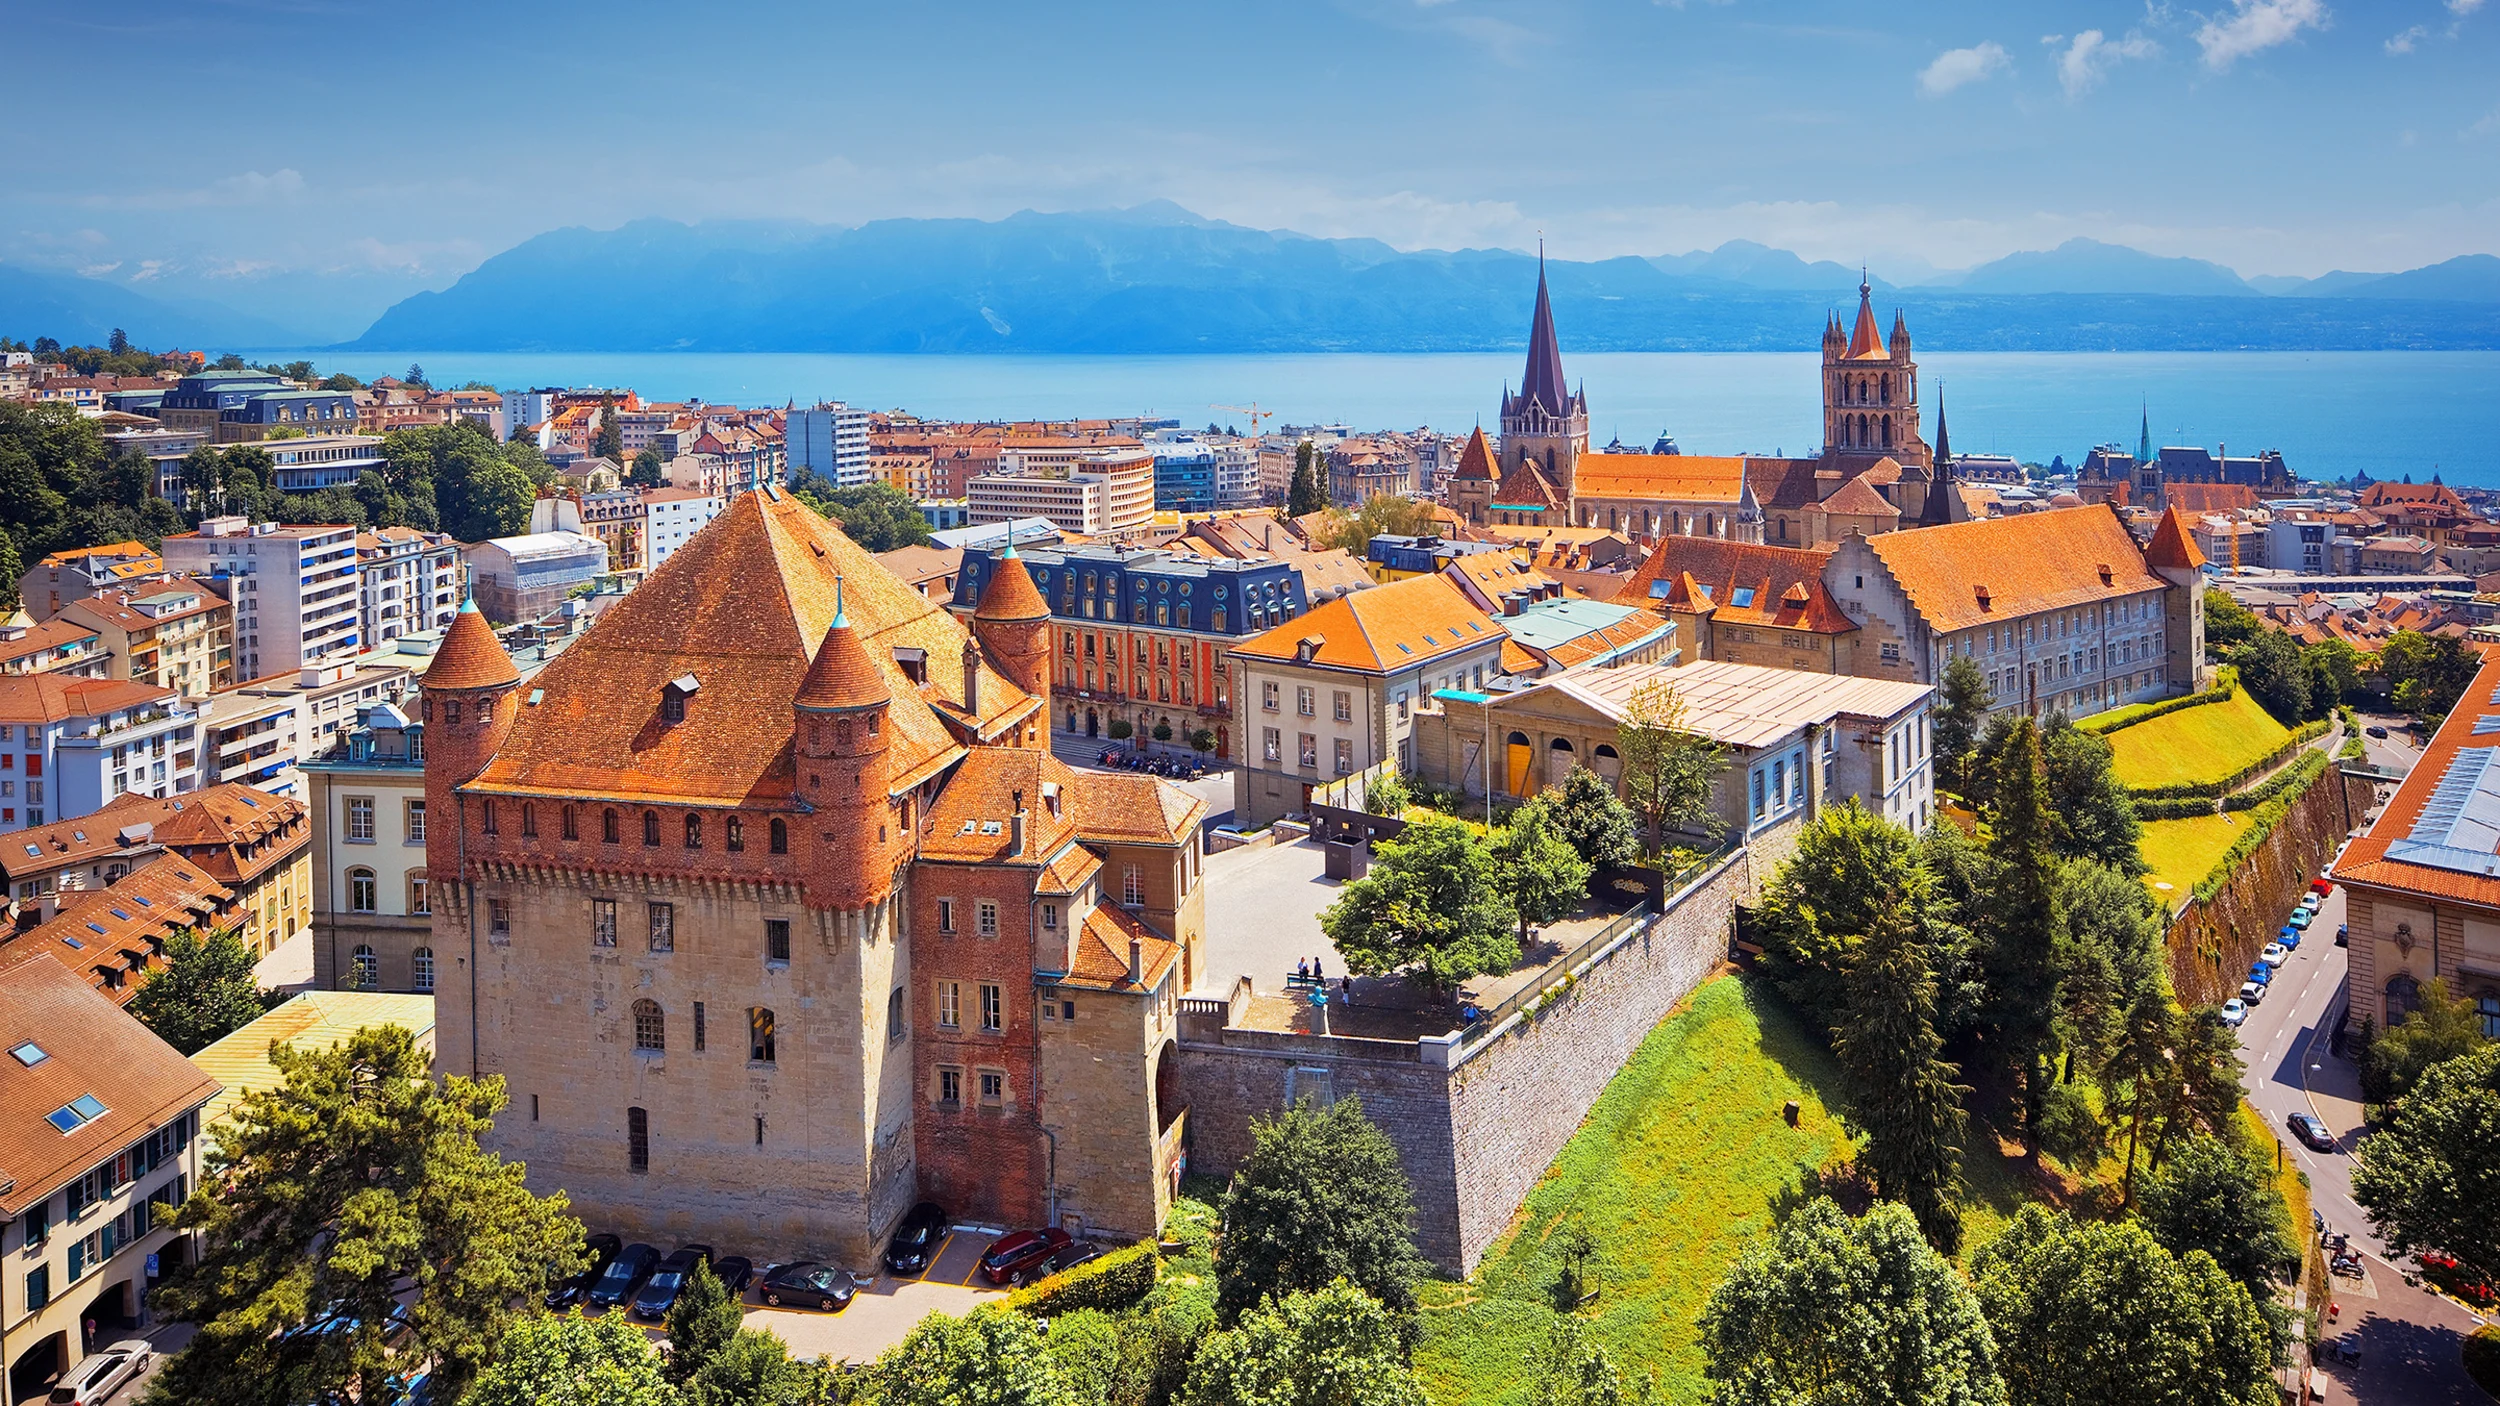 Ville de lausanne : les meilleurs lieux touristiques à Lausanne